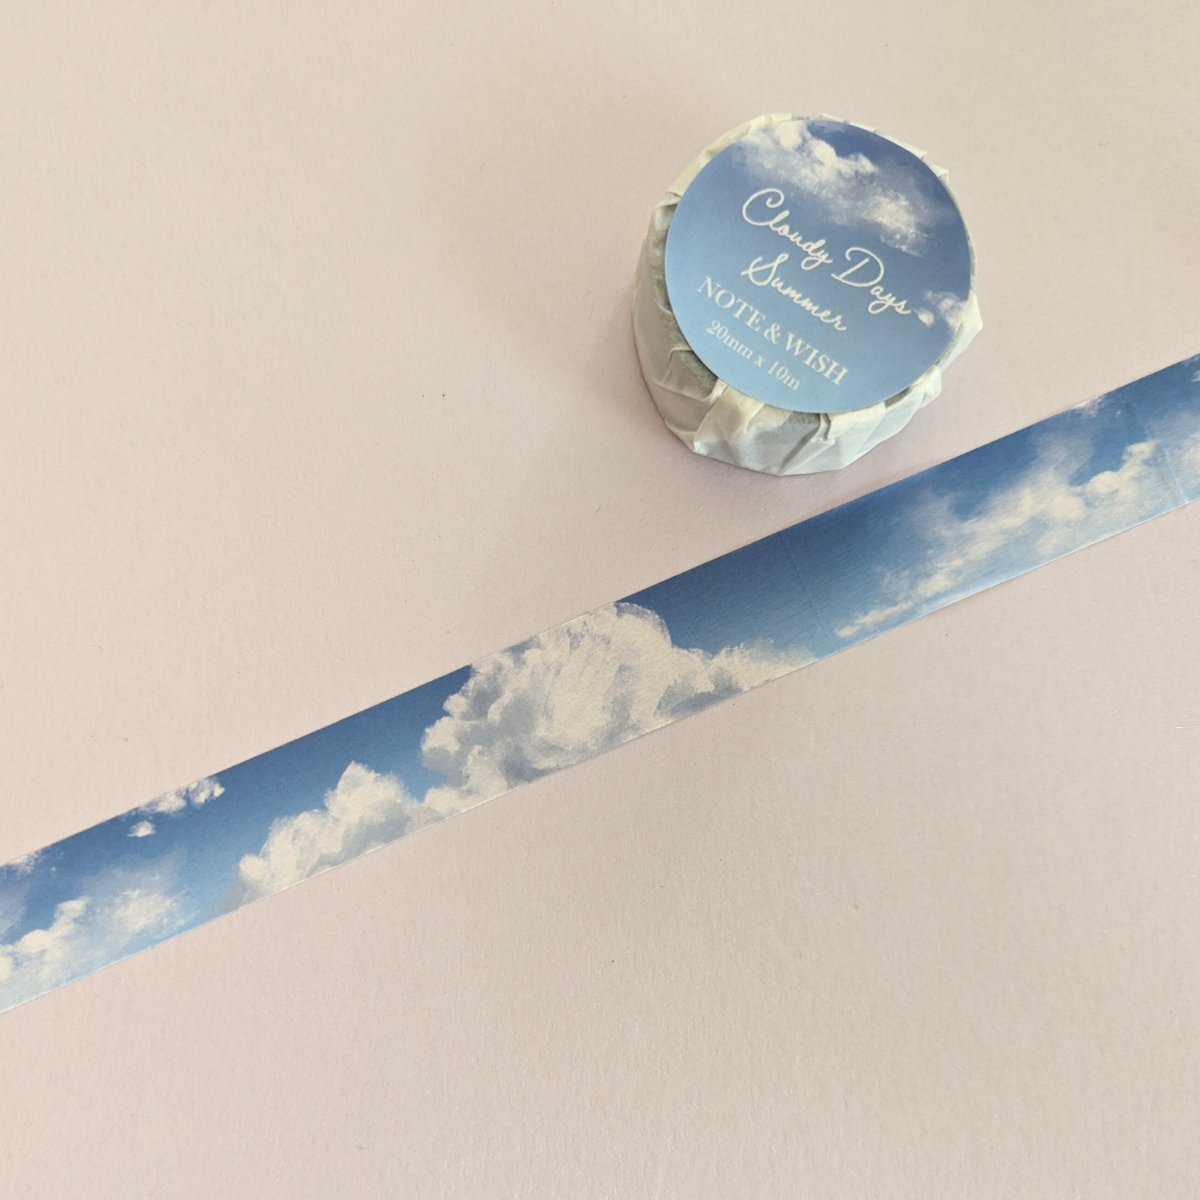 Ce rouleau de masking tape est un accessoire de décoration unique qui évoque la sérénité et la beauté d’un ciel d’été. Avec son design apaisant, il apporte une touche de calme et de rêverie à vos projets créatifs.